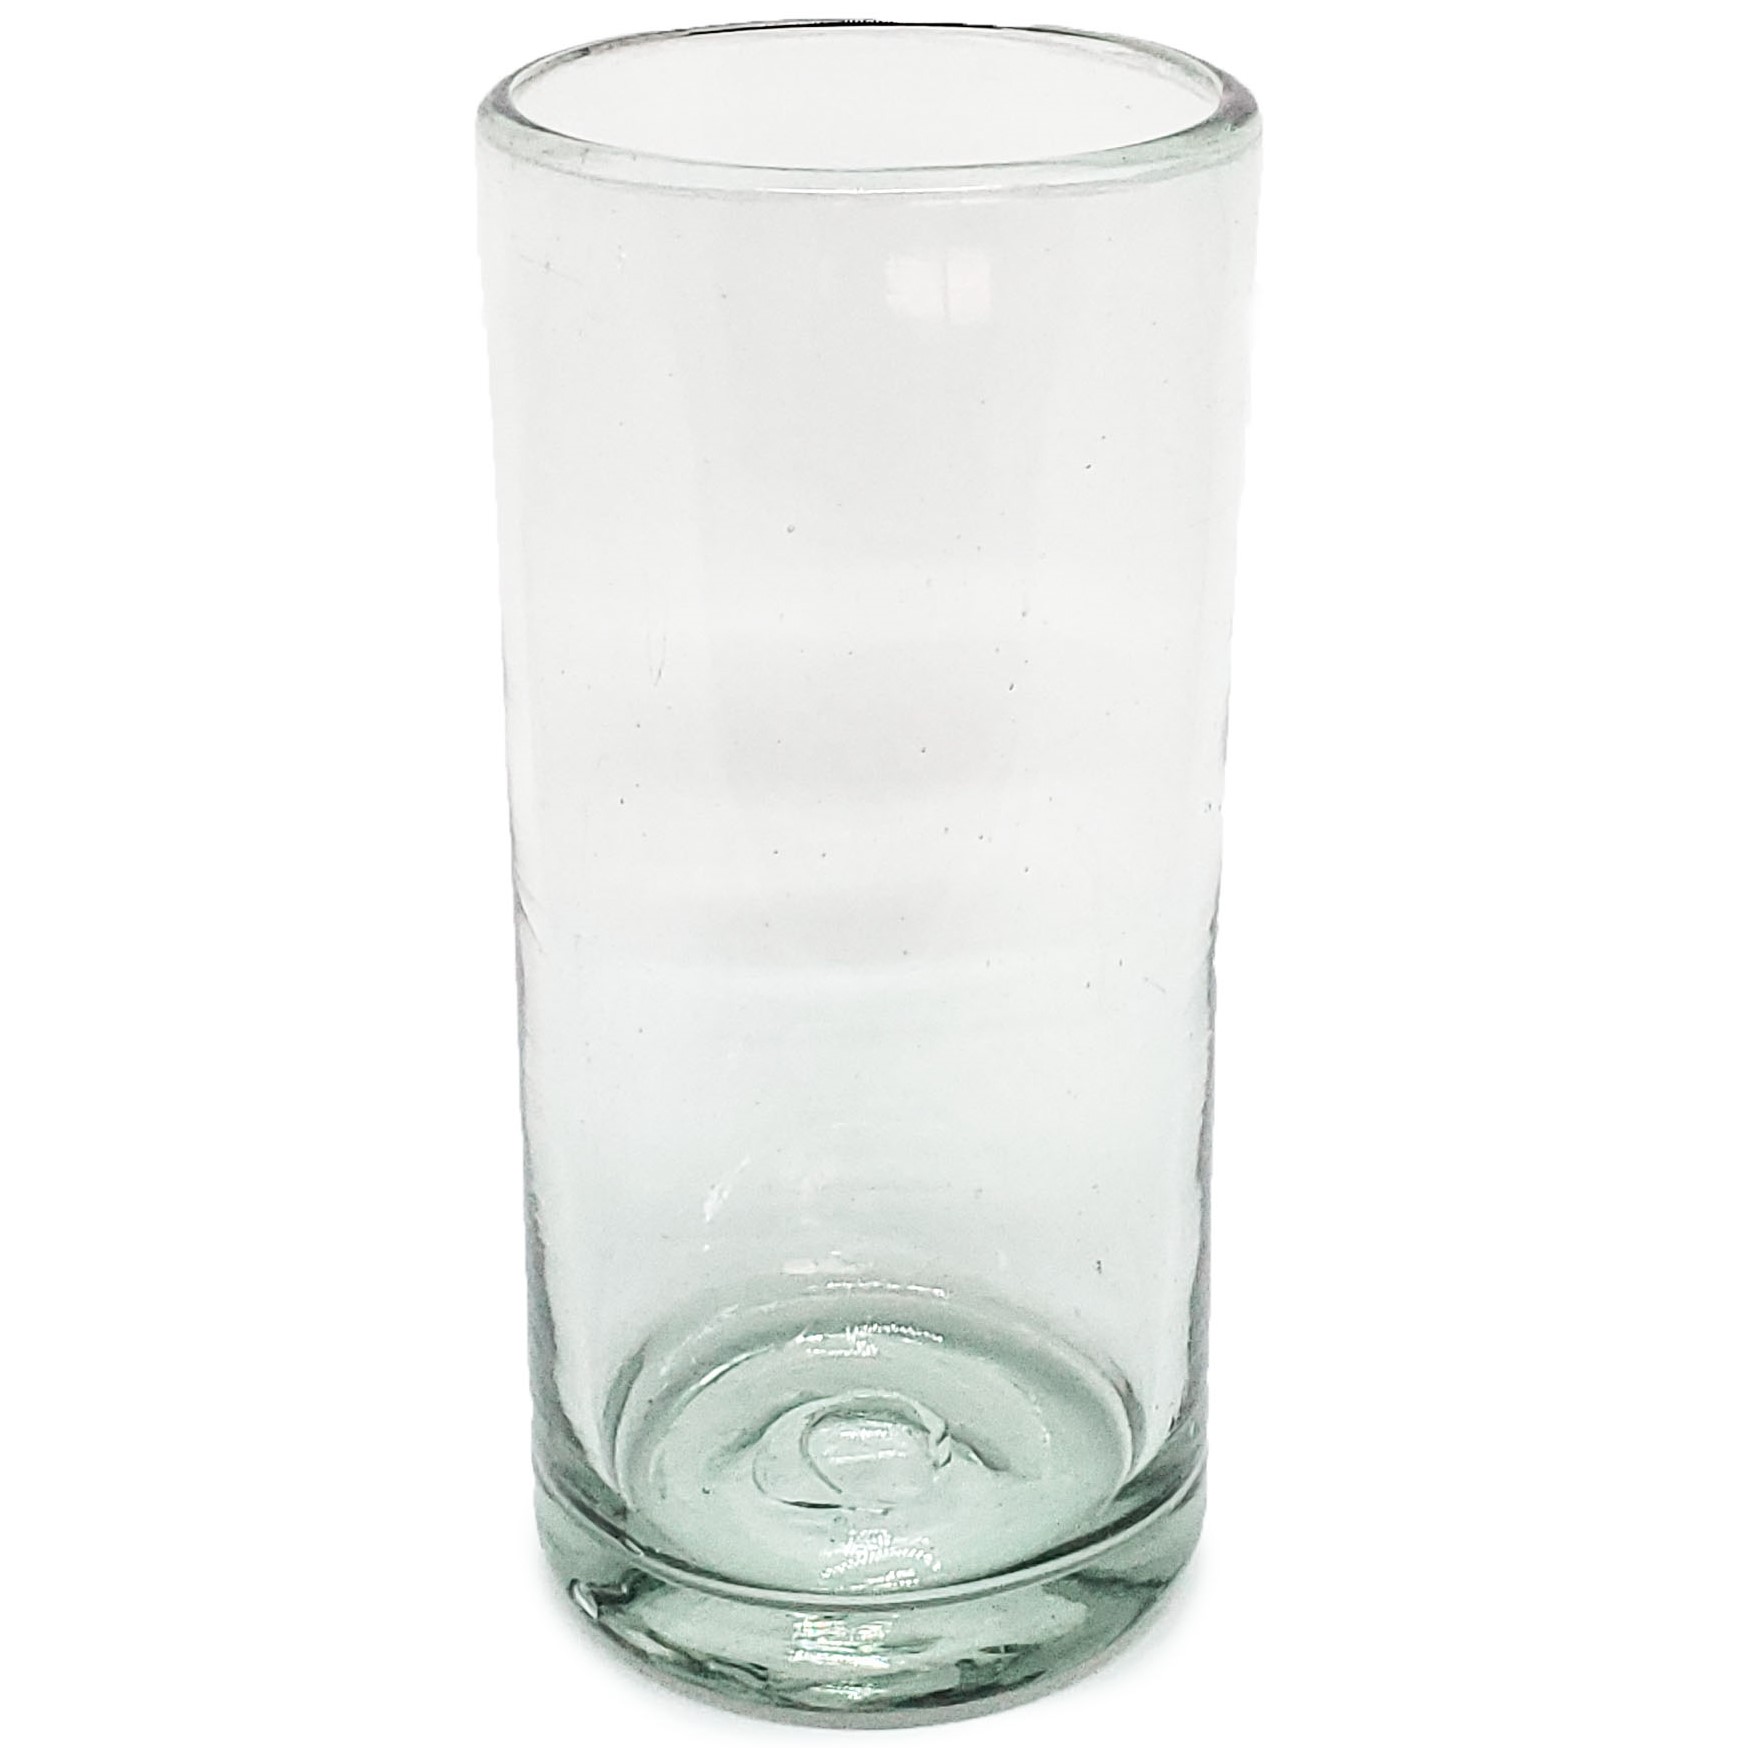 VIDRIO SOPLADO al Mayoreo / vasos Jumbo transparentes / Éste clásico juego de vasos jumbo está hecho con vidrio reciclado. Contiene pequeñas burbujas atrapadas en el vaso.